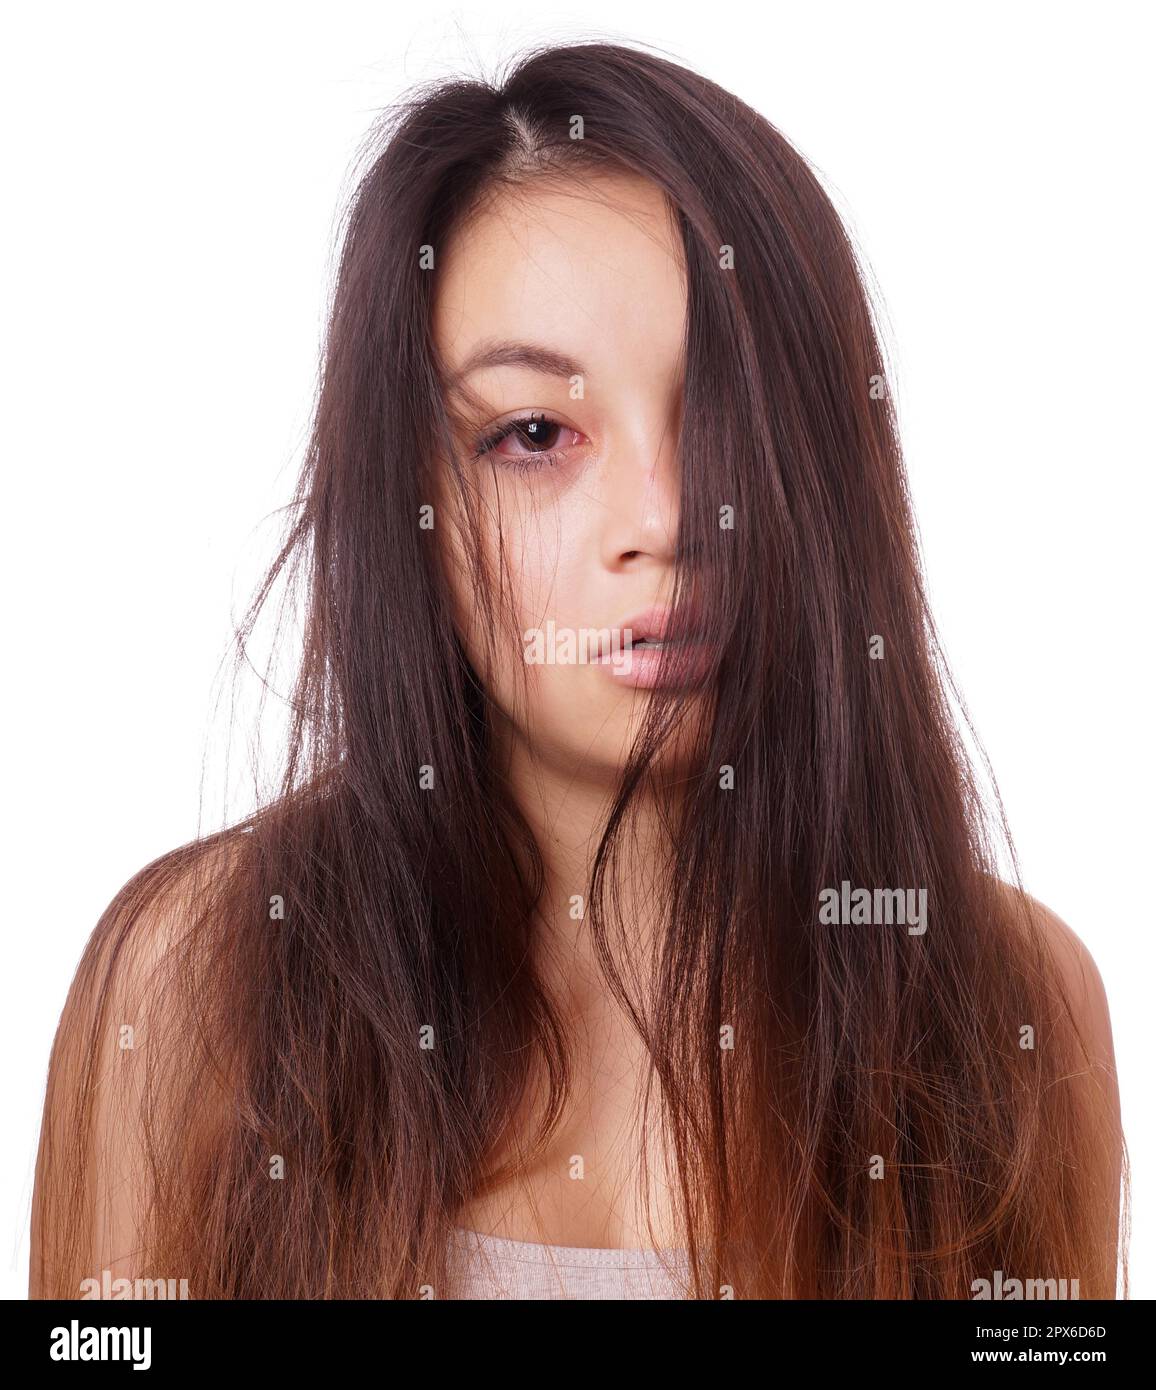 Traurige junge asiatische Frau mit zerzausten Haaren und roten Augen, die weinen Stockfoto